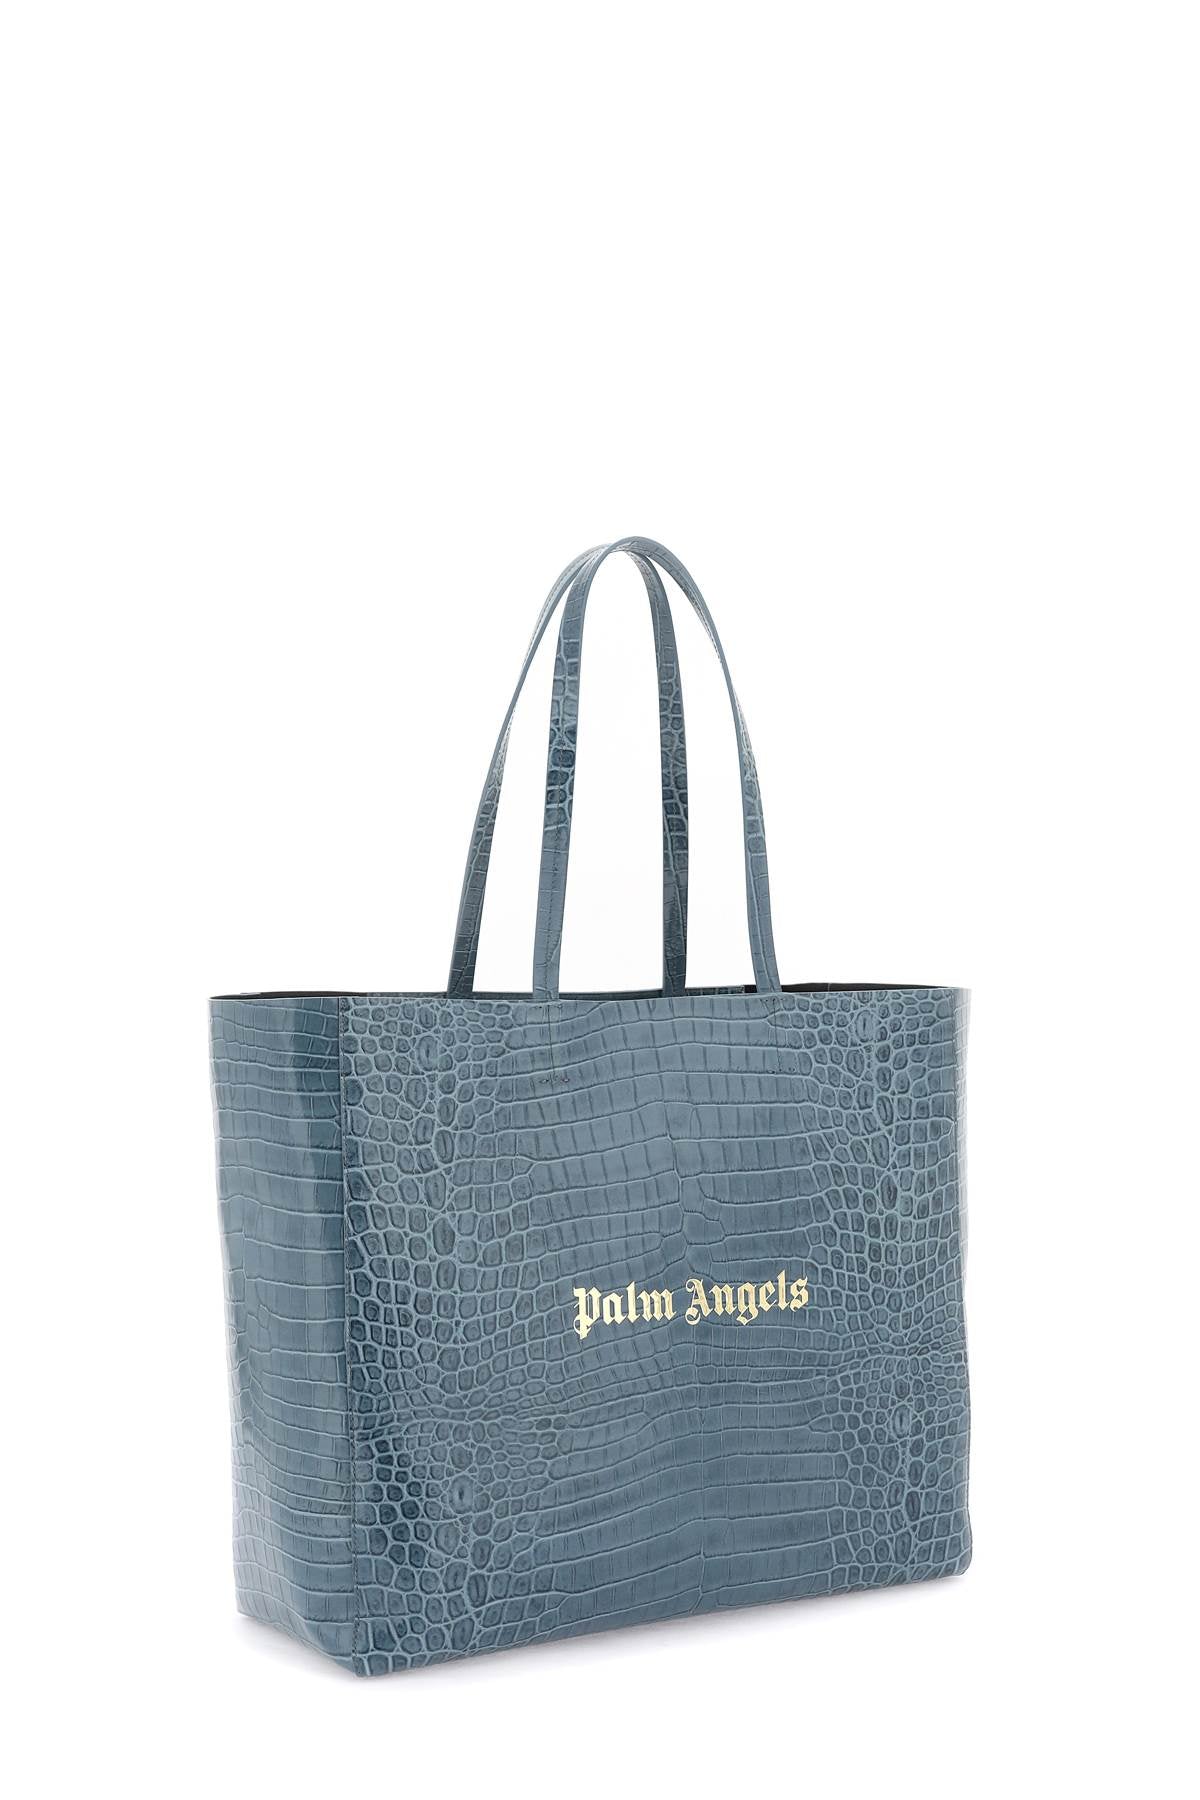 Men's Light Blue Croco-Embossed Leather Shopping Handbag